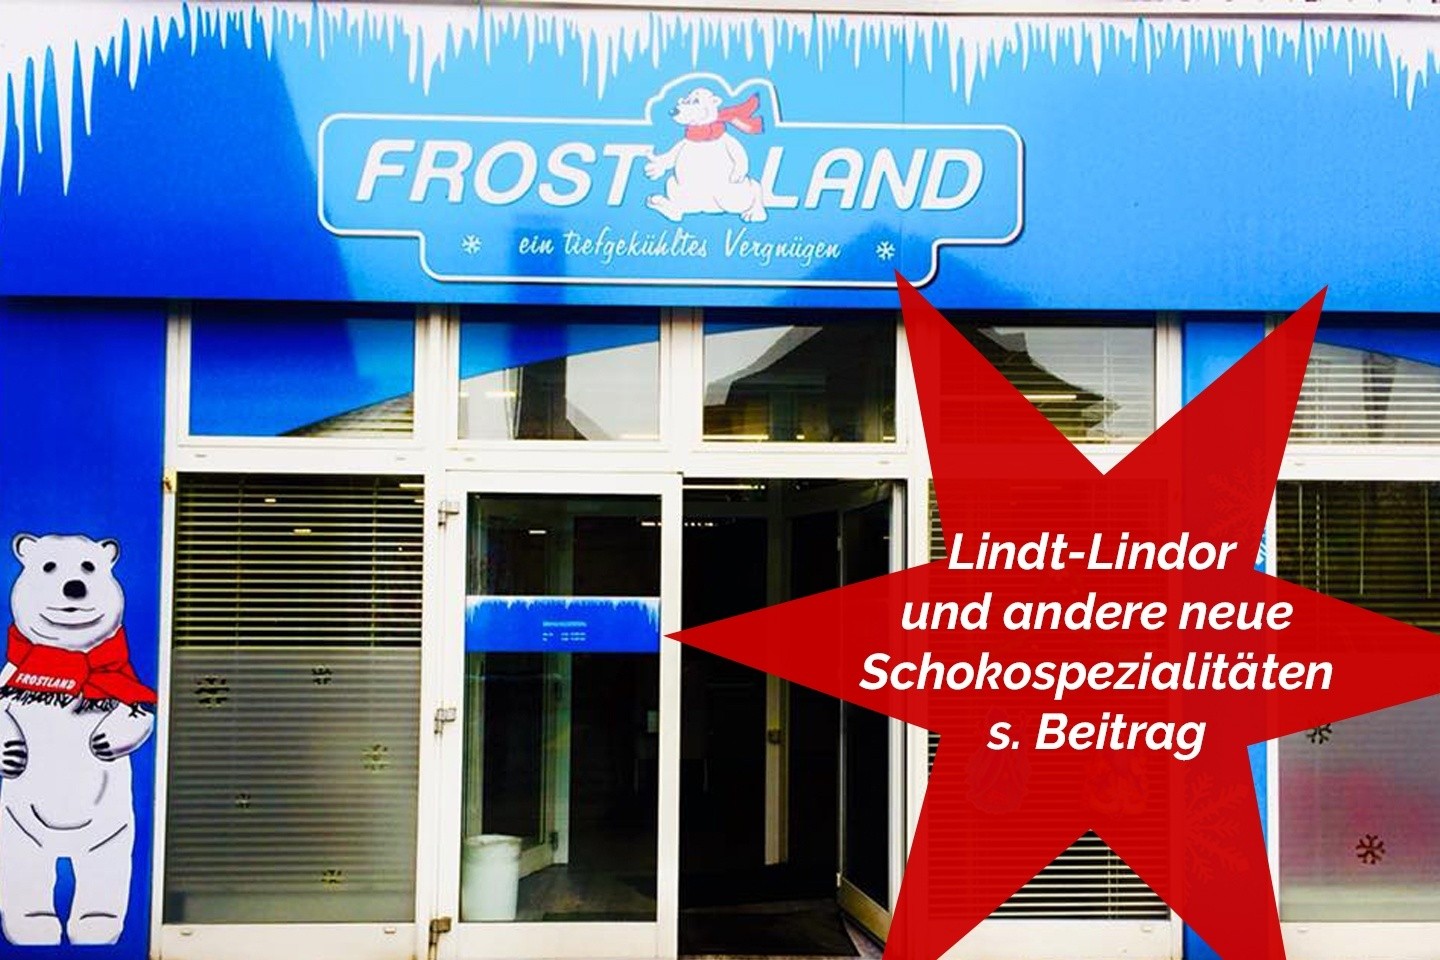 Lindt - Lindor und andere neue Schokospezialitäten bei unserem Partner Frostland Bad Driburg